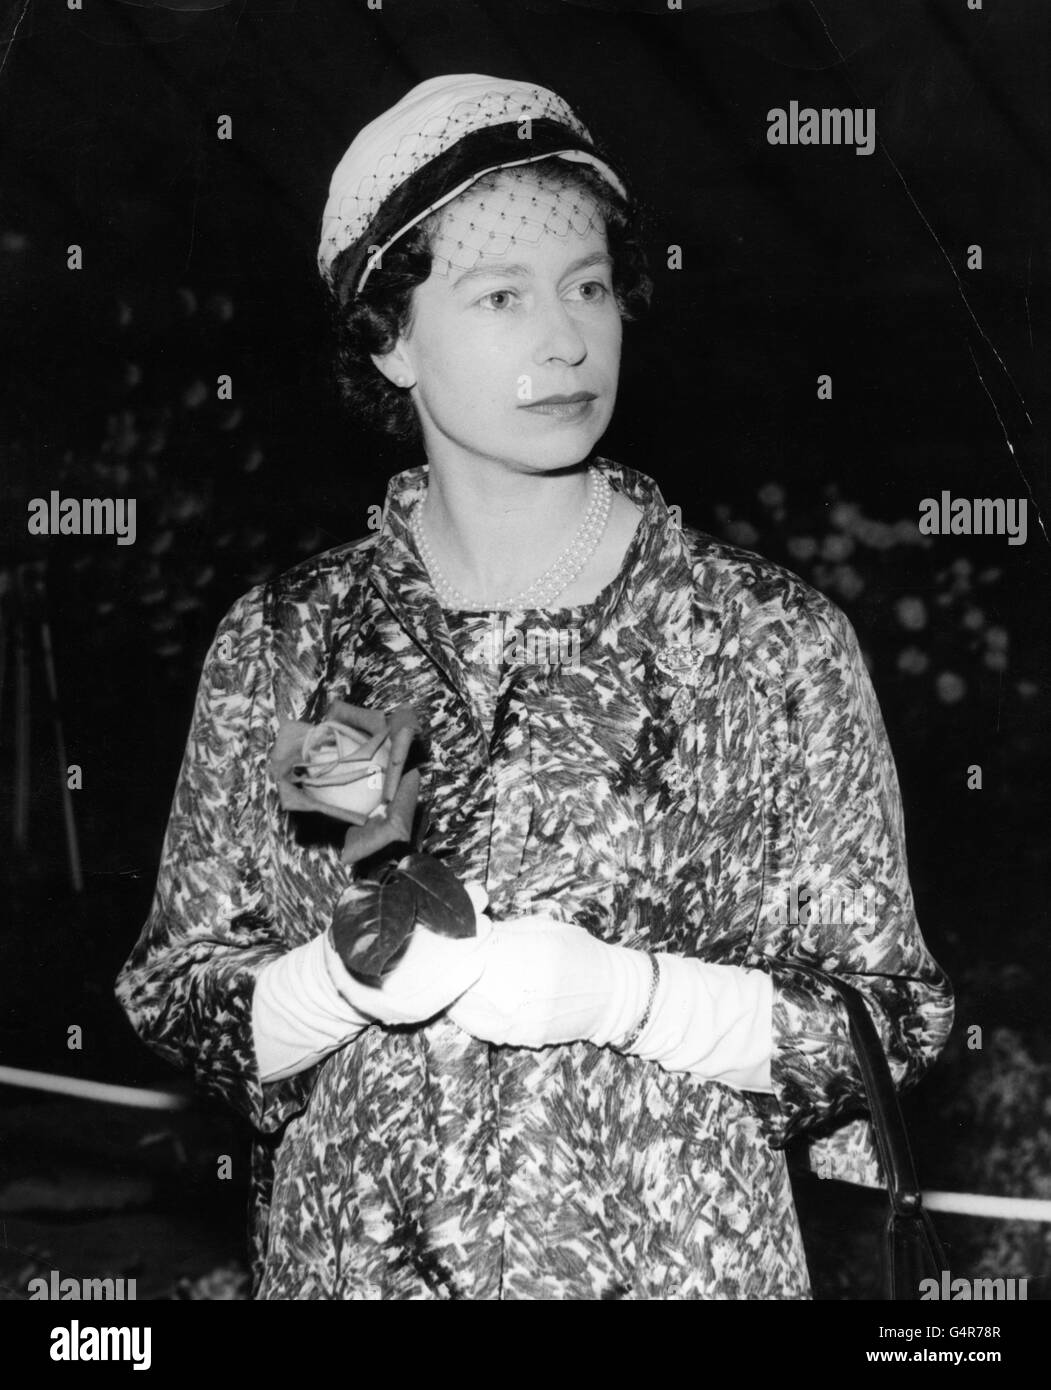 Königin Elizabeth II. Hält eine Rose, die ihr der bekannte Rosenbauer Harry Wheatcroft während ihrer Tour durch die Chelsea Flower Show auf dem Gelände des Royal Hospital in Chelsea, London, überreicht hat. Stockfoto